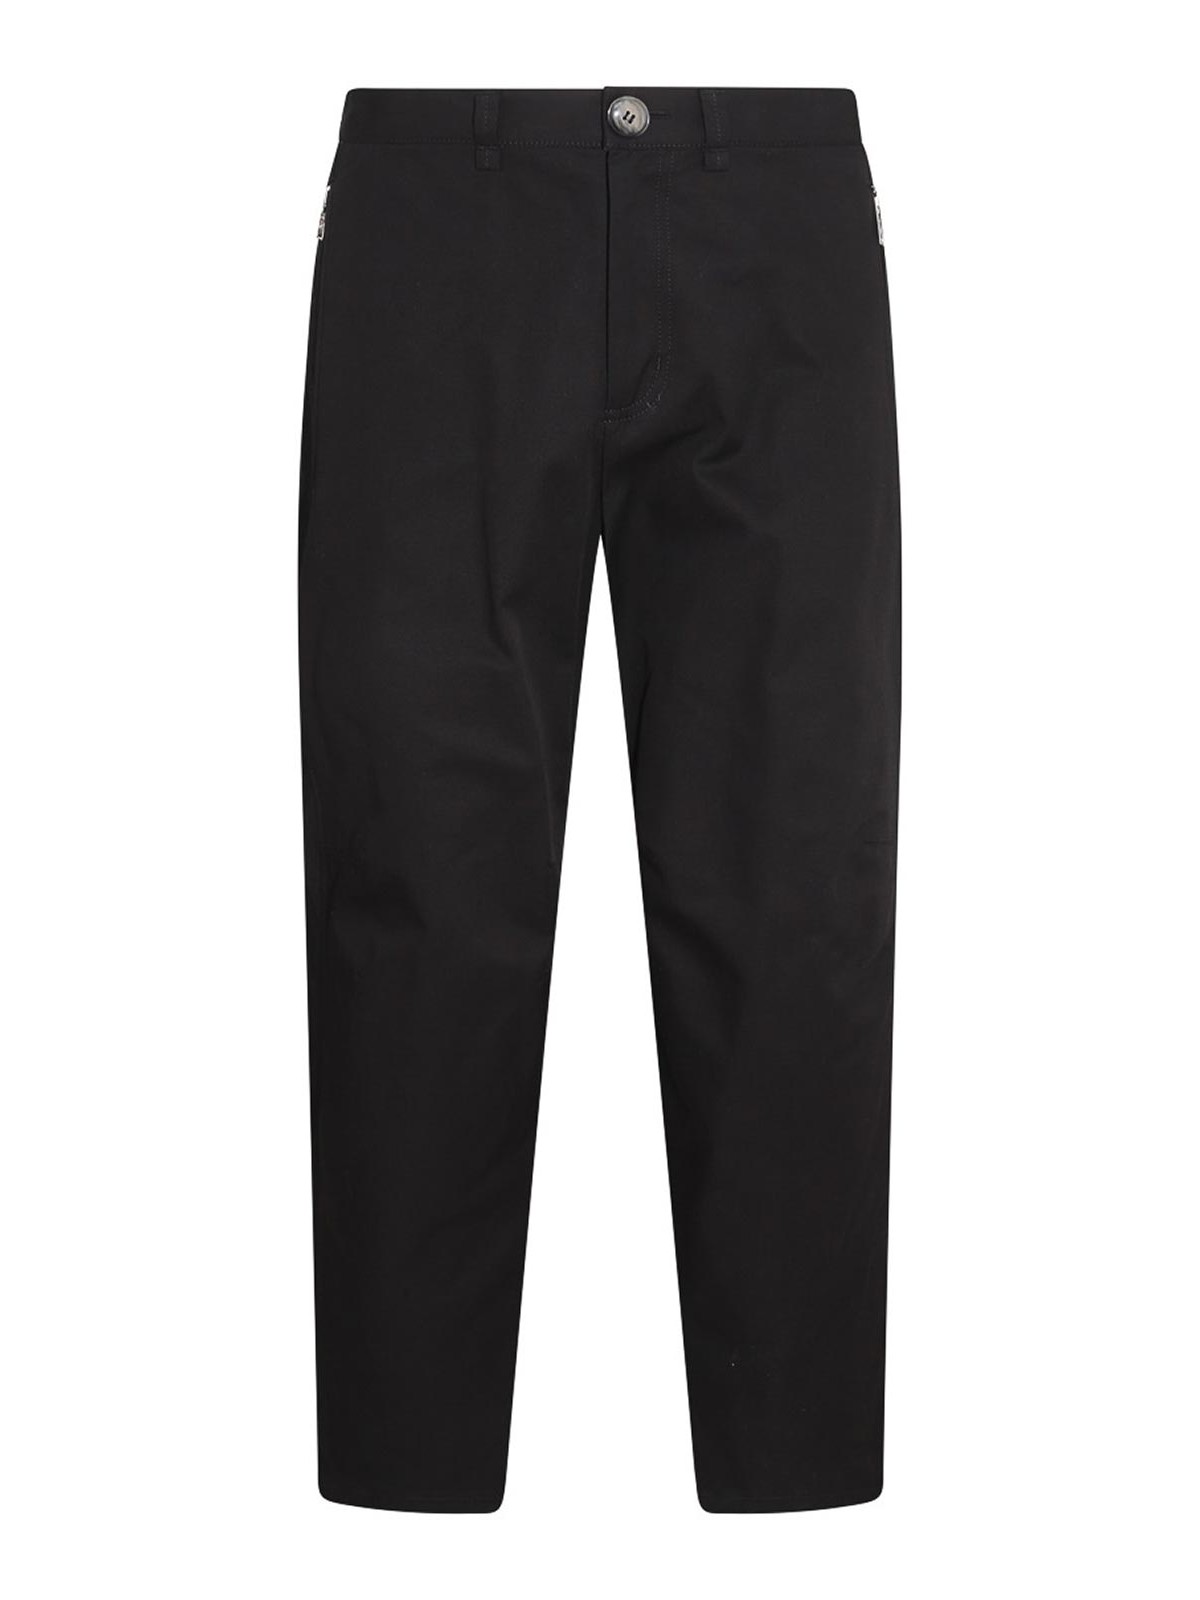 Wool-blend Bootcut Pants - Midnight black - Ladies